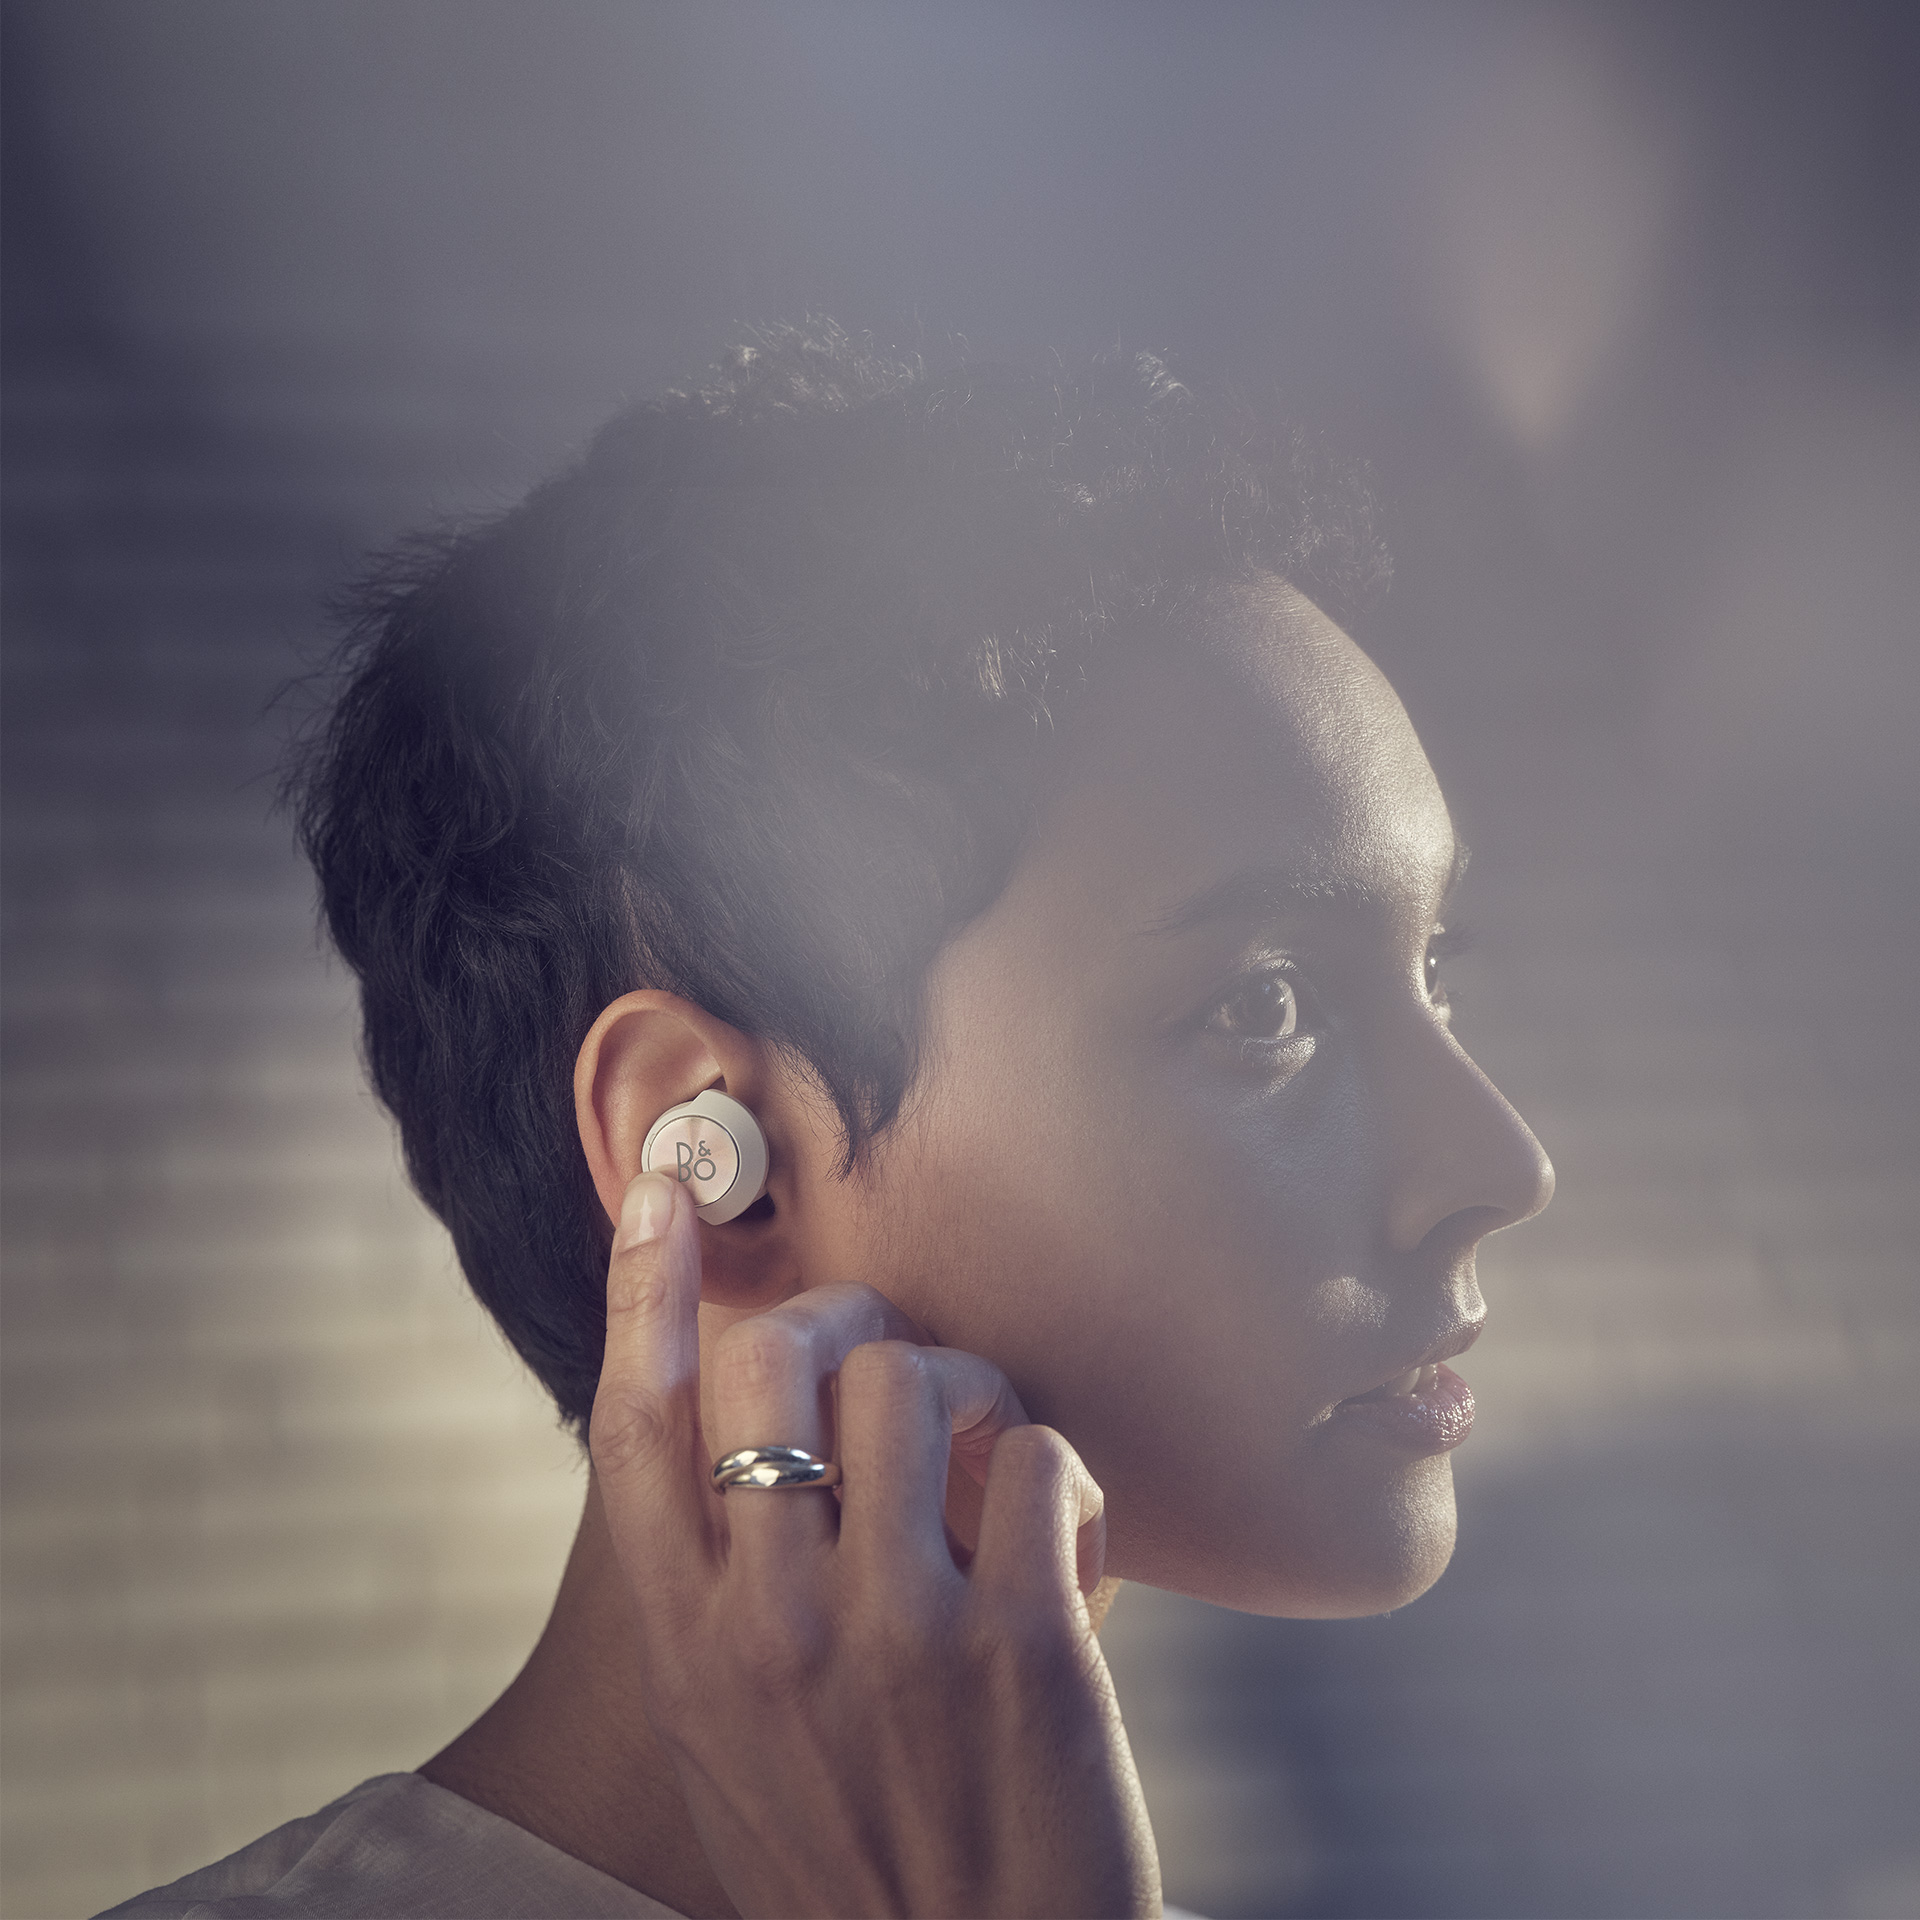 Bang & Olufsen ra mắt Beoplay EQ, tai nghe true wireless chống ồn đầu tiên của mình